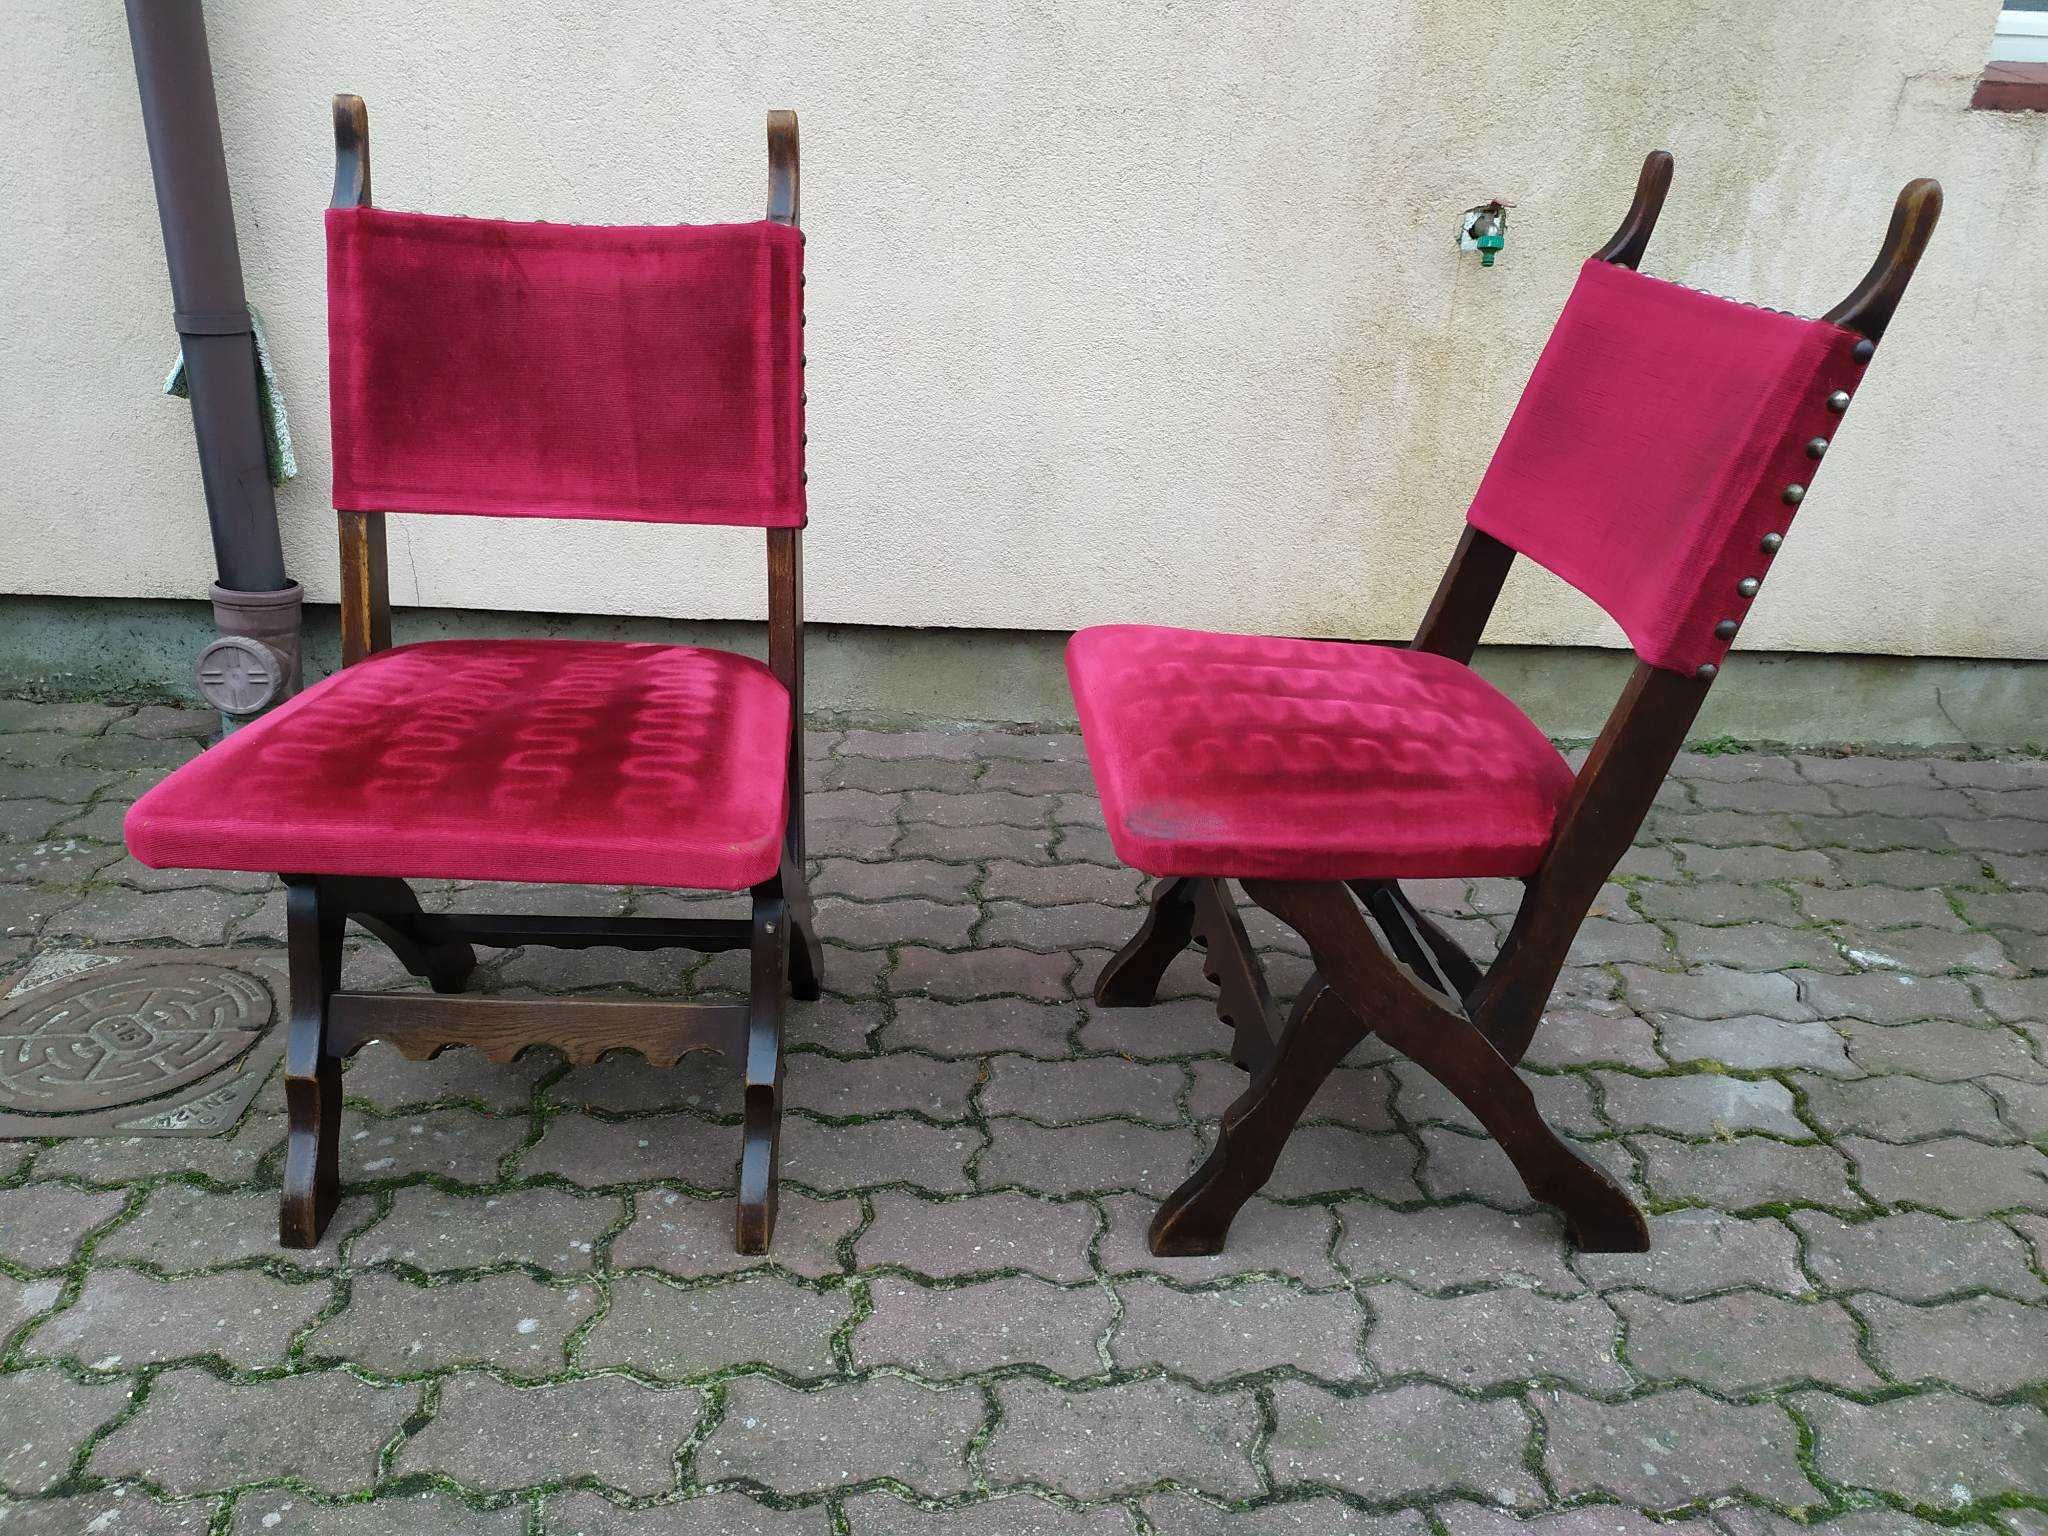 Krzesła wykonywane i zdobione ręcznie